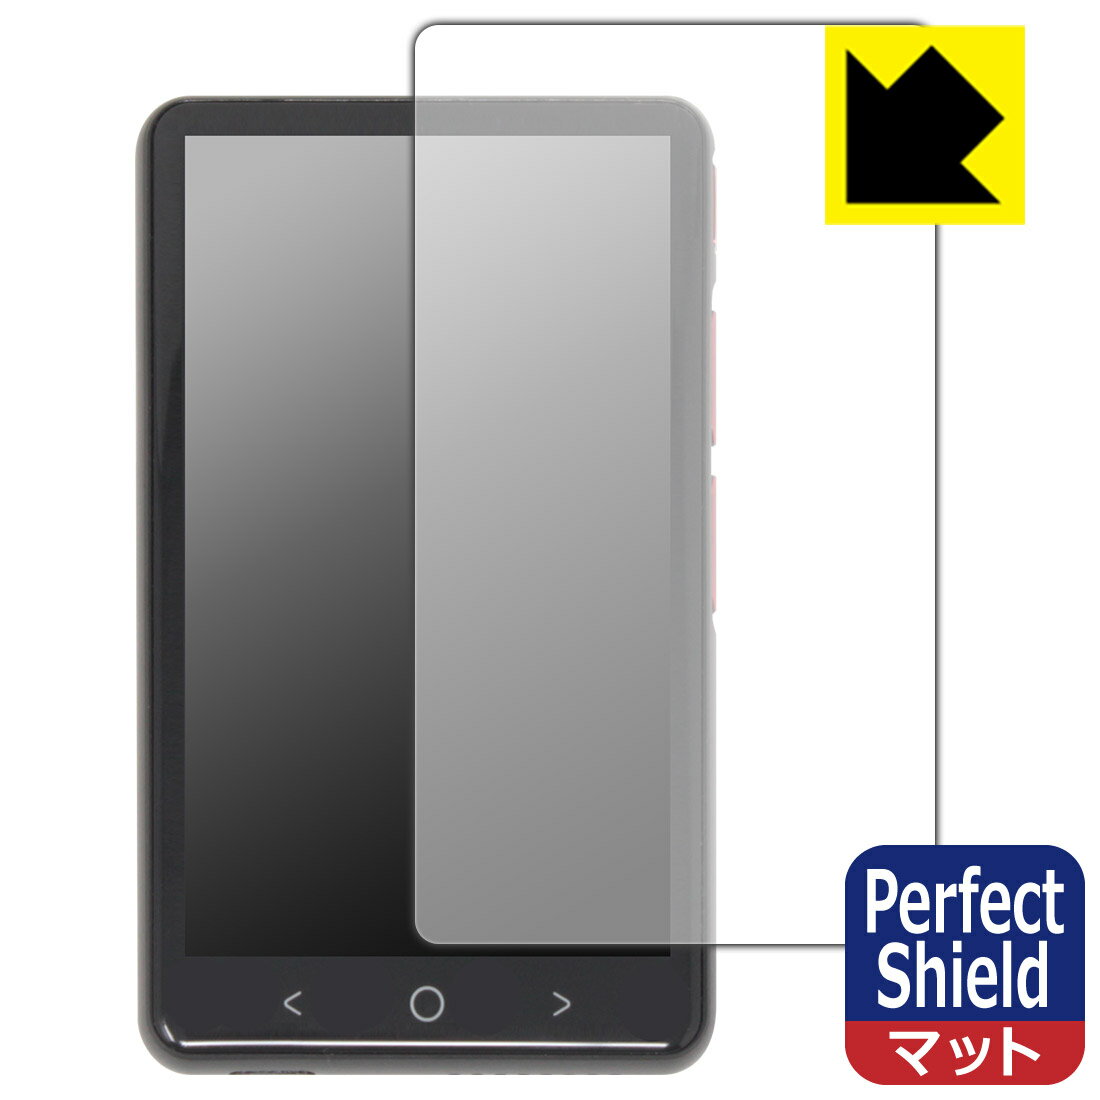 対応機種●対応機種 : Aura Pioneer Allingo TG (オーリンゴ TG) (Model No. P40)専用の商品です。●製品内容 : 画面用フィルム3枚・クリーニングワイプ1個●※この機器は周辺部が曲面となったラウンド仕様のため、保護フィルムを端まで貼ることができません。(表示部分はカバーしています)●「Perfect Shield」は画面の反射を抑え、指のすべりもなめらかな指紋や皮脂汚れがつきにくい『アンチグレアタイプ(非光沢)の保護フィルム』●安心の国産素材を使用。日本国内の自社工場で製造し出荷しています。 ★貼り付け失敗交換サービス対象商品★ 国内自社工場製造・発送だからできる 安心の製品保証とサポート ■製品保証 お届けした製品が誤っていたり、不具合があった場合などには、お届けから1ヶ月以内にメールにてお問い合わせください。交換等対応させていただきます。[キャンセル・返品（返金・交換）について] ■■貼り付け失敗時の交換サービス■■貼り付けに失敗しても1回だけ無償交換ができます。(失敗したフィルムをお送りいただき、新品に無償交換します。往復の送料のみお客様にご負担をお願いいたします。詳しくは製品に同封の紙をご確認ください) ■■保護フィルム貼り付け代行サービス■■保護フィルムの貼り付け作業に自信がない方には、PDA工房で貼り付け作業を代行いたします。(PDA工房の保護フィルムのみが対象です。詳しくは製品に同封の紙をご確認ください) Perfect Shield【反射低減】保護フィルム 素材説明 ■画面の映り込みを抑える反射防止タイプ！表面に微細な凹凸を作ることにより、外光を乱反射させギラツキを抑える「アンチグレア加工」がされております。屋外での太陽光の映り込み、屋内でも蛍光灯などの映り込みが気になるシーンが多い方におすすめです。また、指紋がついた場合でも目立ちにくいという特長があります。■防指紋のハードコート！さらさらな指ざわり！指滑りはさらさらな使用感でストレスのない操作・入力が可能です。ハードコート加工がされており、キズや擦れに強くなっています。簡単にキズがつかず長くご利用いただけます。反射防止のアンチグレア加工で指紋が目立ちにくい上、表面は防汚コーティングがされており、皮脂や汚れがつきにくく、また、落ちやすくなっています。■気泡の入りにくい特殊な自己吸着タイプ接着面は気泡の入りにくい特殊な自己吸着タイプです。素材に柔軟性があり、貼り付け作業も簡単にできます。また、はがすときにガラス製フィルムのように割れてしまうことはありません。貼り直しが何度でもできるので、正しい位置へ貼り付けられるまでやり直すことができます。■安心の日本製最高級グレードの国産素材を日本国内の弊社工場で加工している完全な Made in Japan です。安心の品質をお届けします。 【ポスト投函送料無料】商品は【ポスト投函発送 (追跡可能メール便)】で発送します。お急ぎ、配達日時を指定されたい方は以下のクーポンを同時購入ください。【お急ぎ便クーポン】　プラス110円(税込)で速達扱いでの発送。お届けはポストへの投函となります。【配達日時指定クーポン】　プラス550円(税込)で配達日時を指定し、宅配便で発送させていただきます。【お急ぎ便クーポン】はこちらをクリック【配達日時指定クーポン】はこちらをクリック